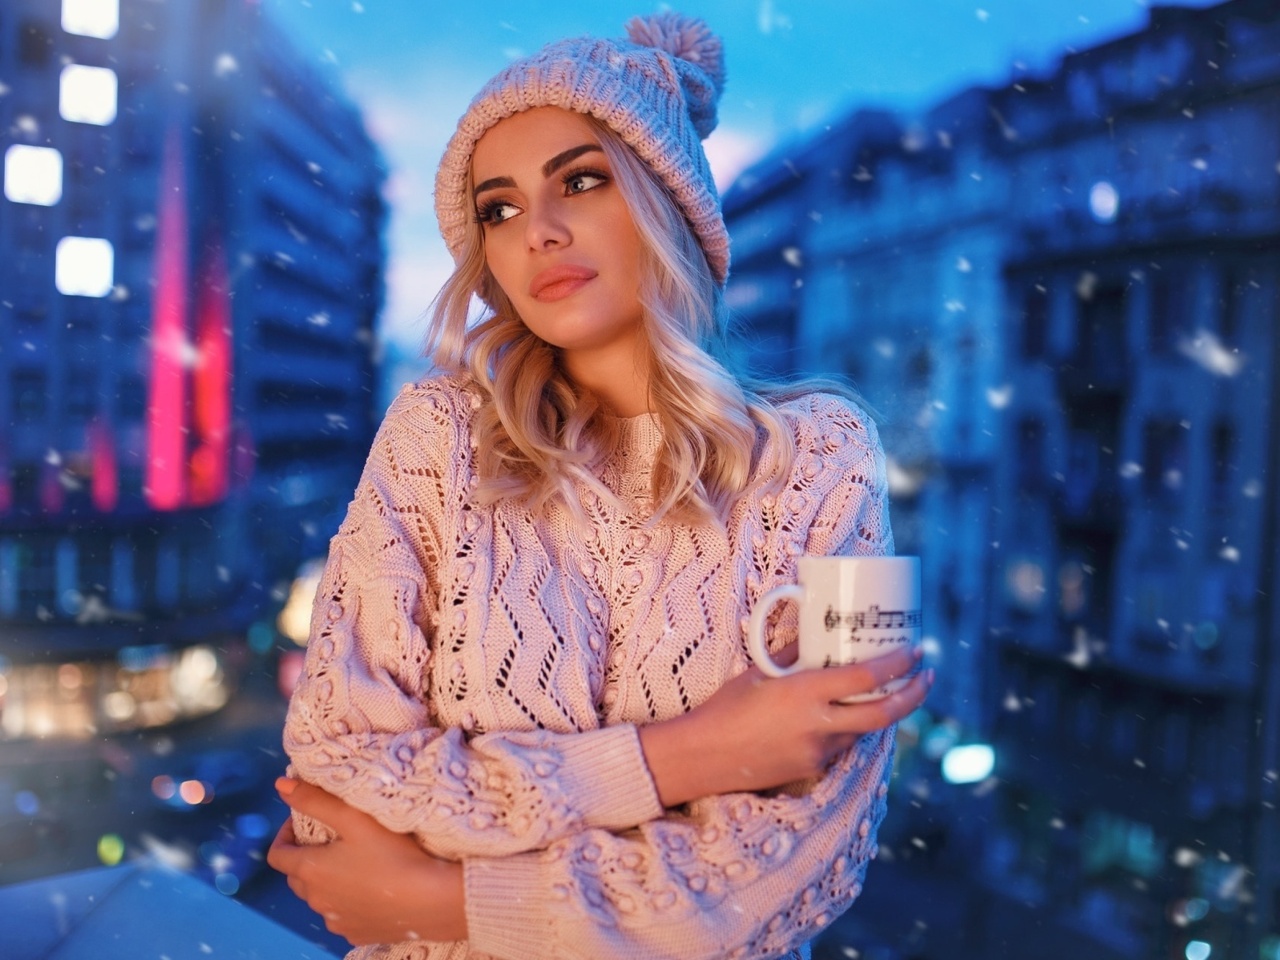 Winter stylish woman screenshot #1 1280x960